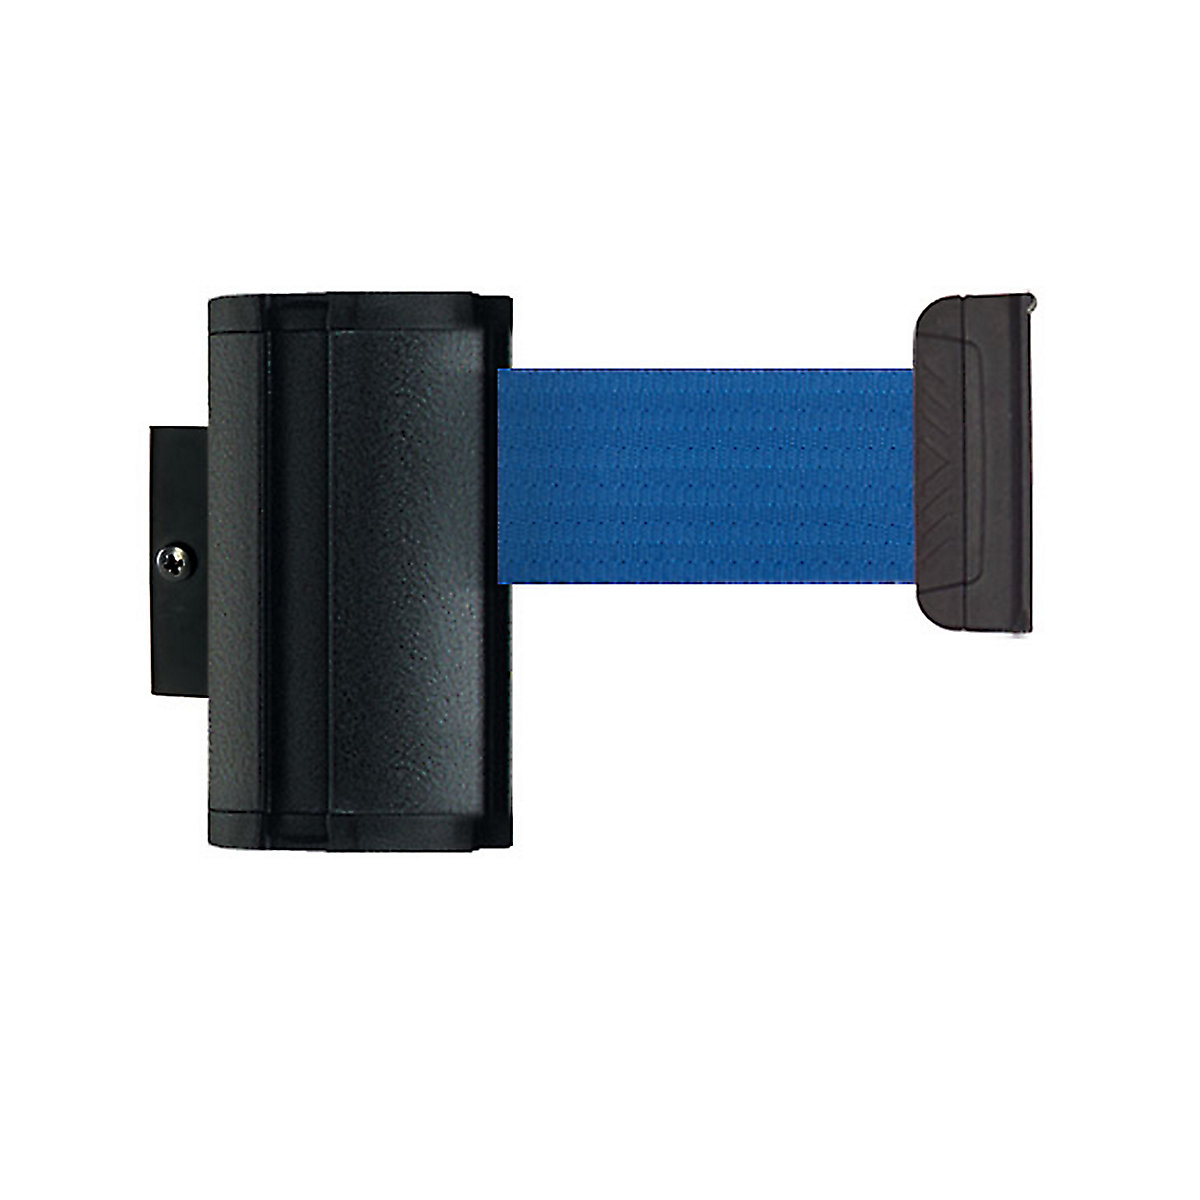 Cassetta per nastro Wall Mount, estrazione nastro max 3700 mm, nastro blu-7